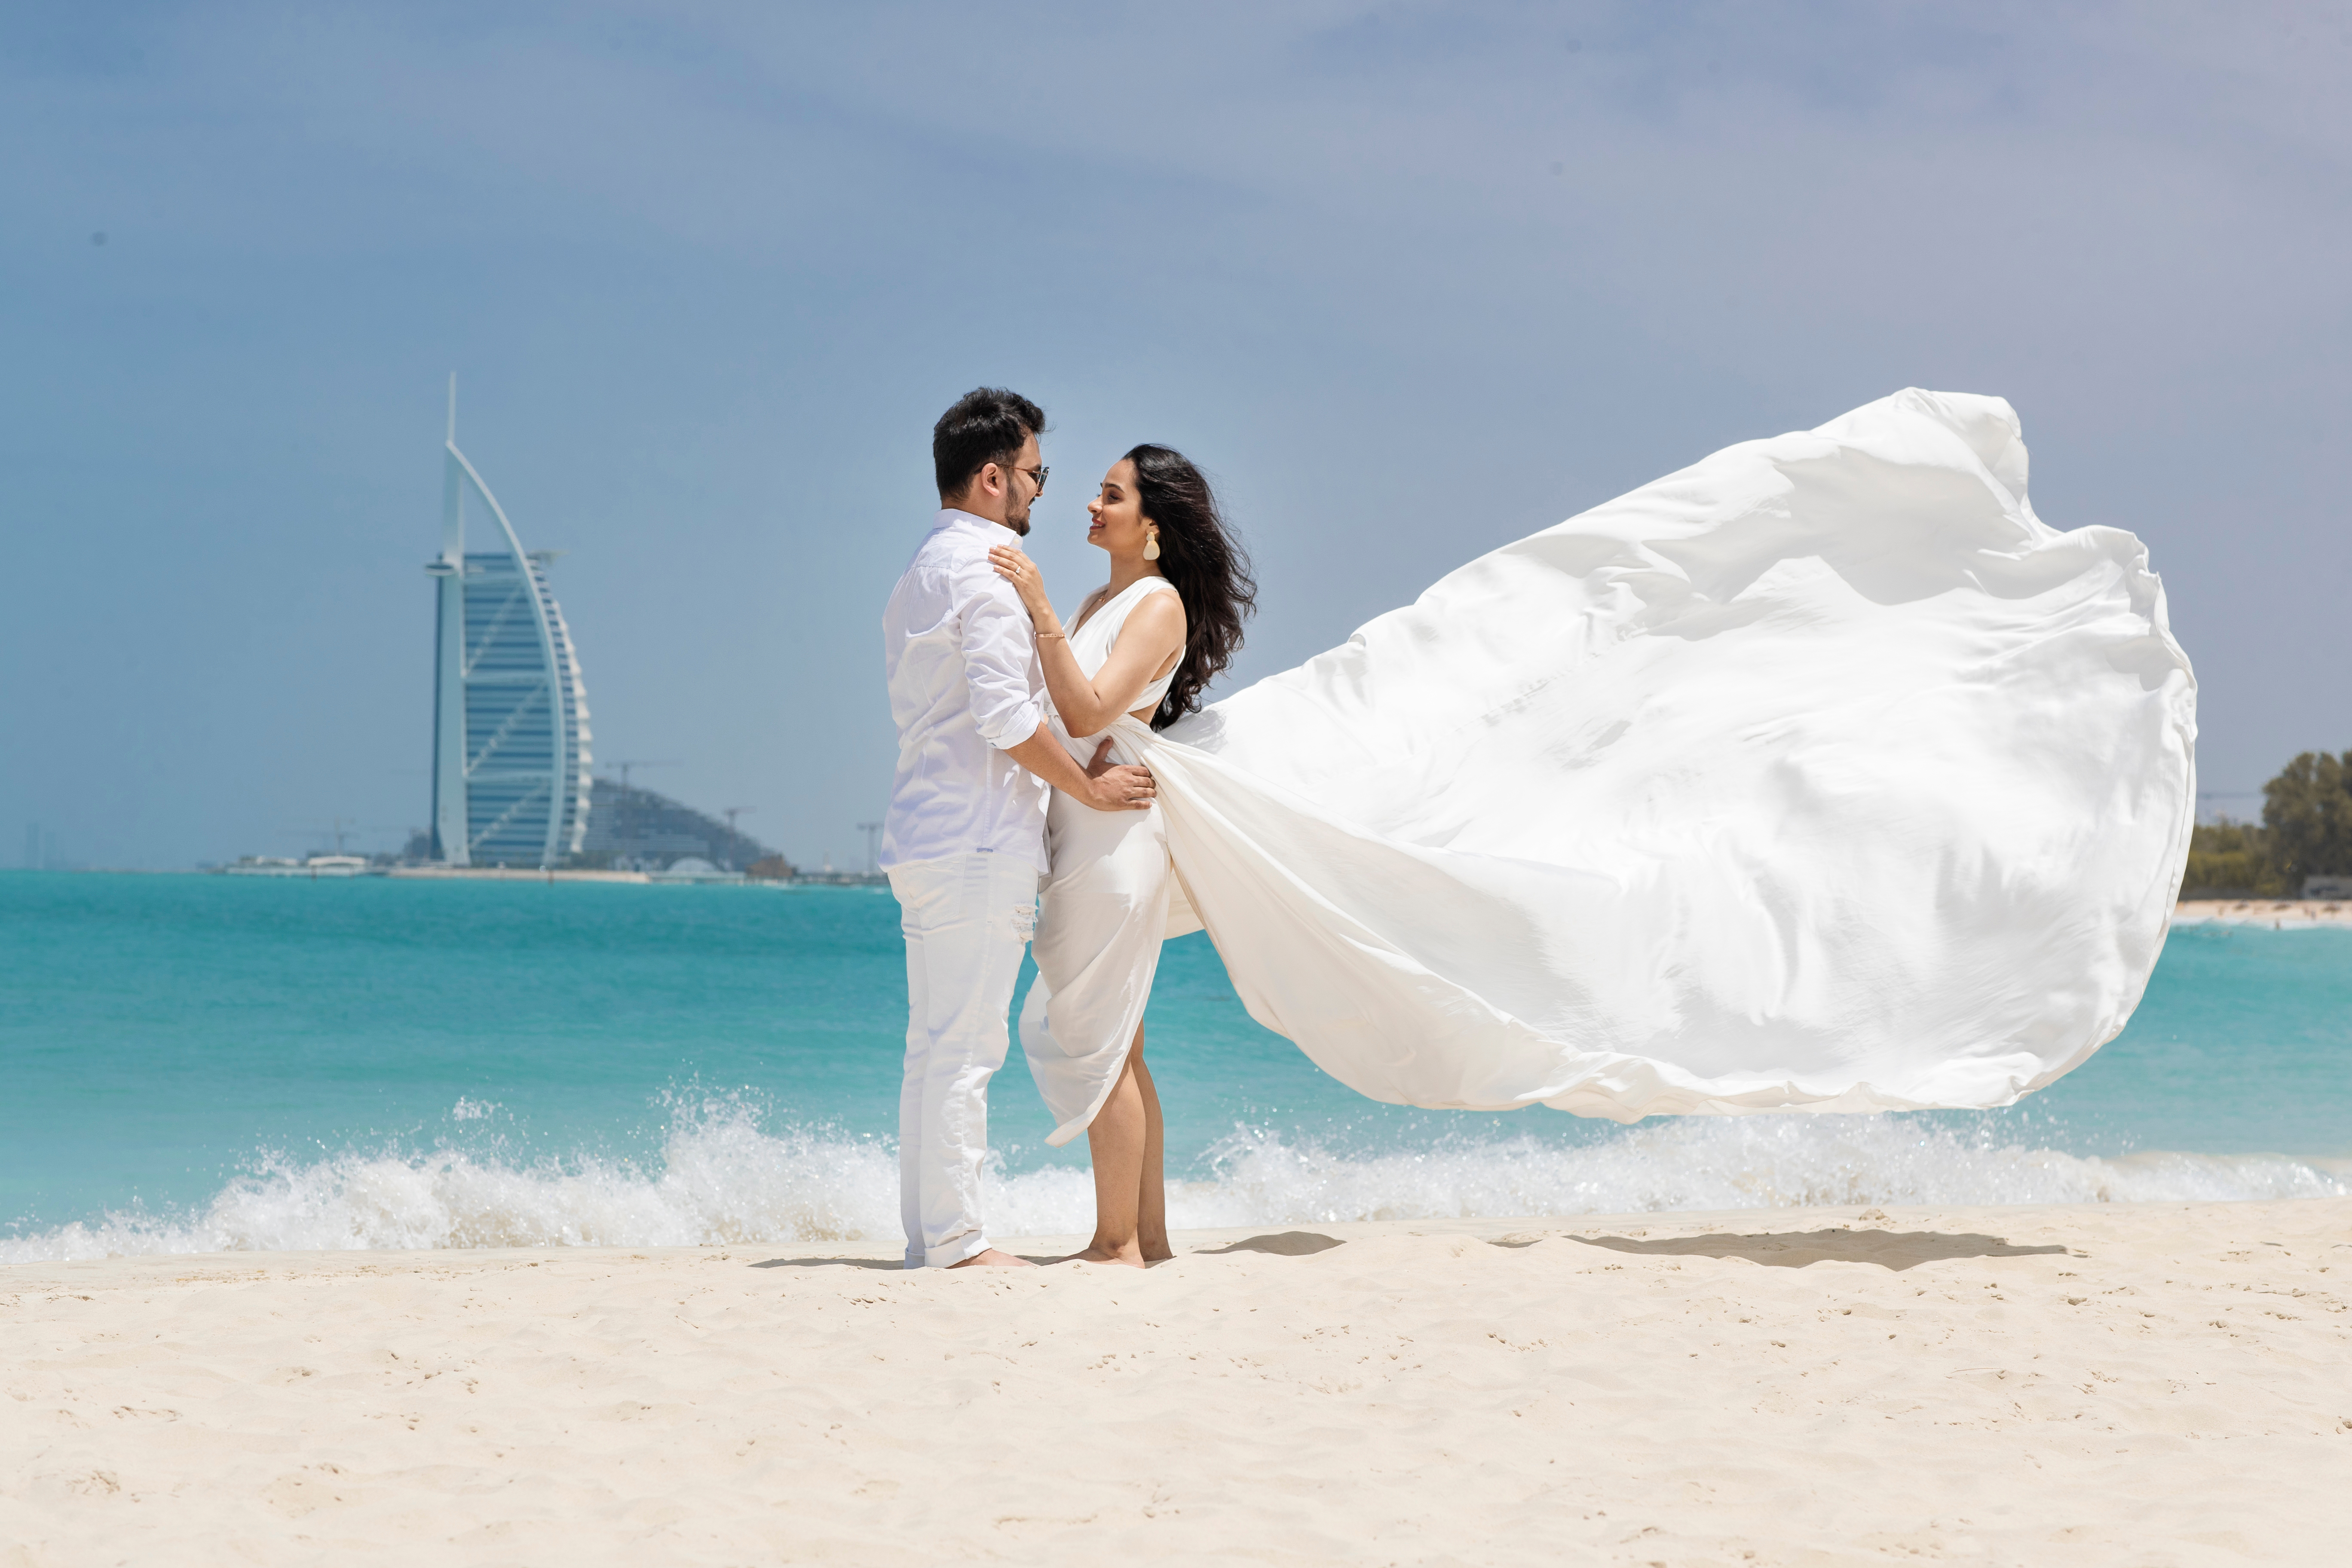 Брак с гражданином Арабских Эмиратов, как способ получить паспорт ОАЭ